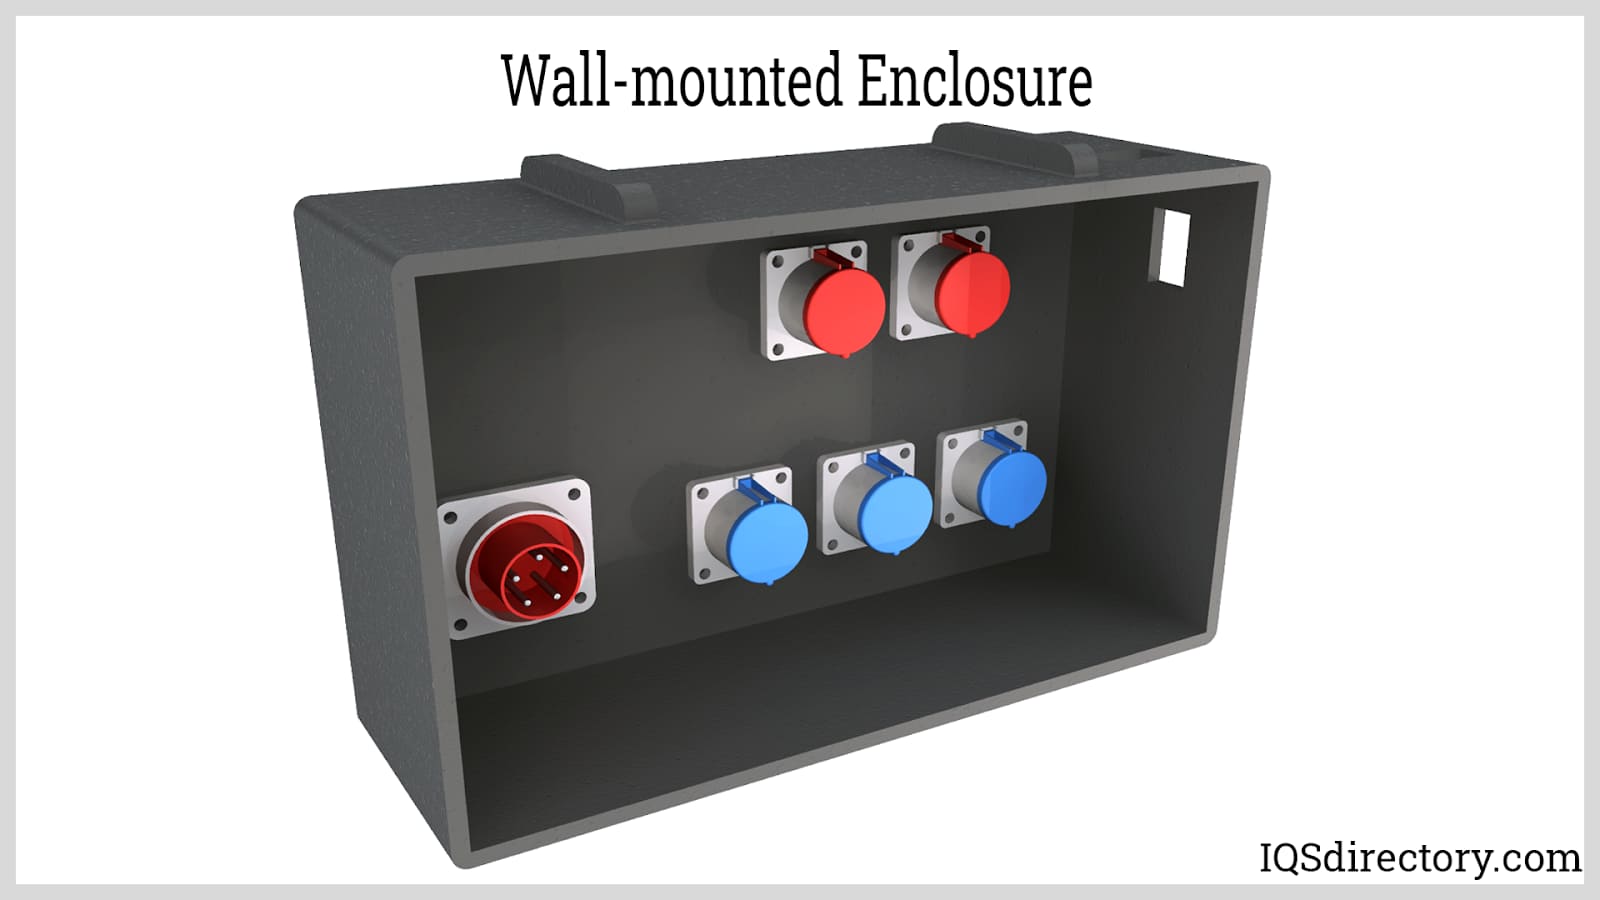 Wall-mounted Enclosure